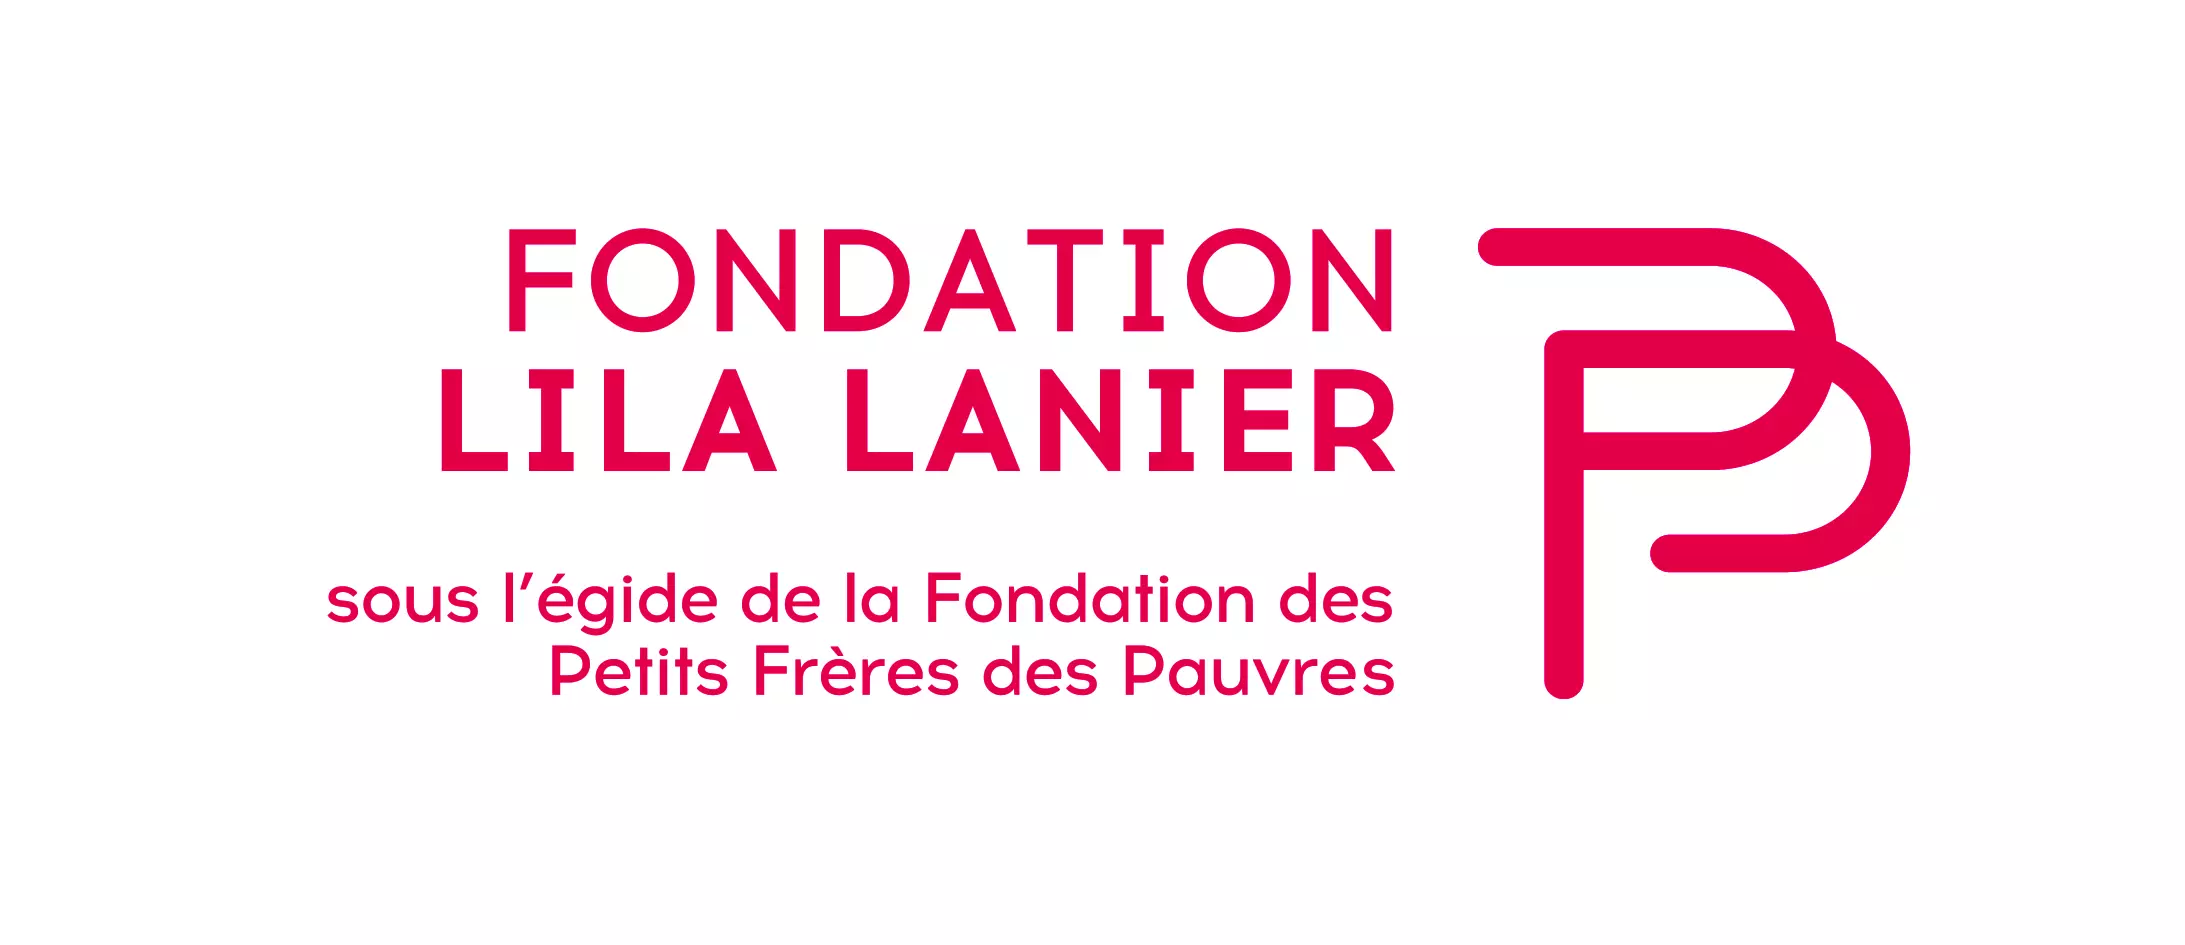 La Fondation LiLa Lanier